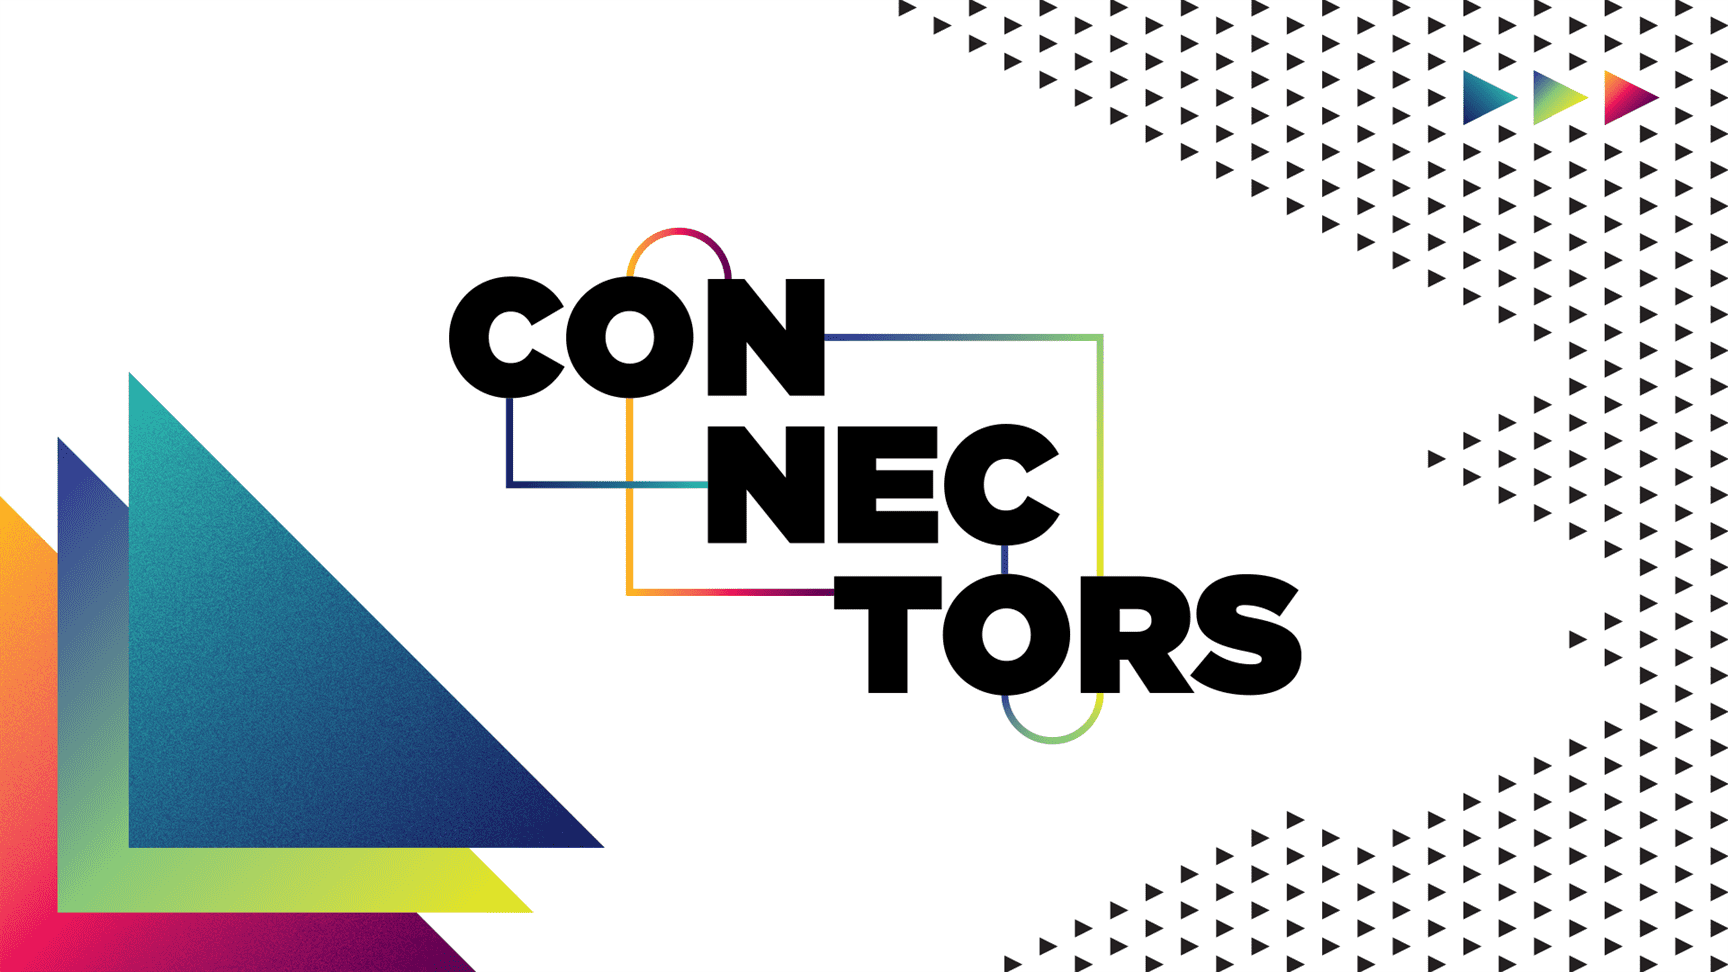 Evento “Connectors” debate profissionalização de influenciadores digitais